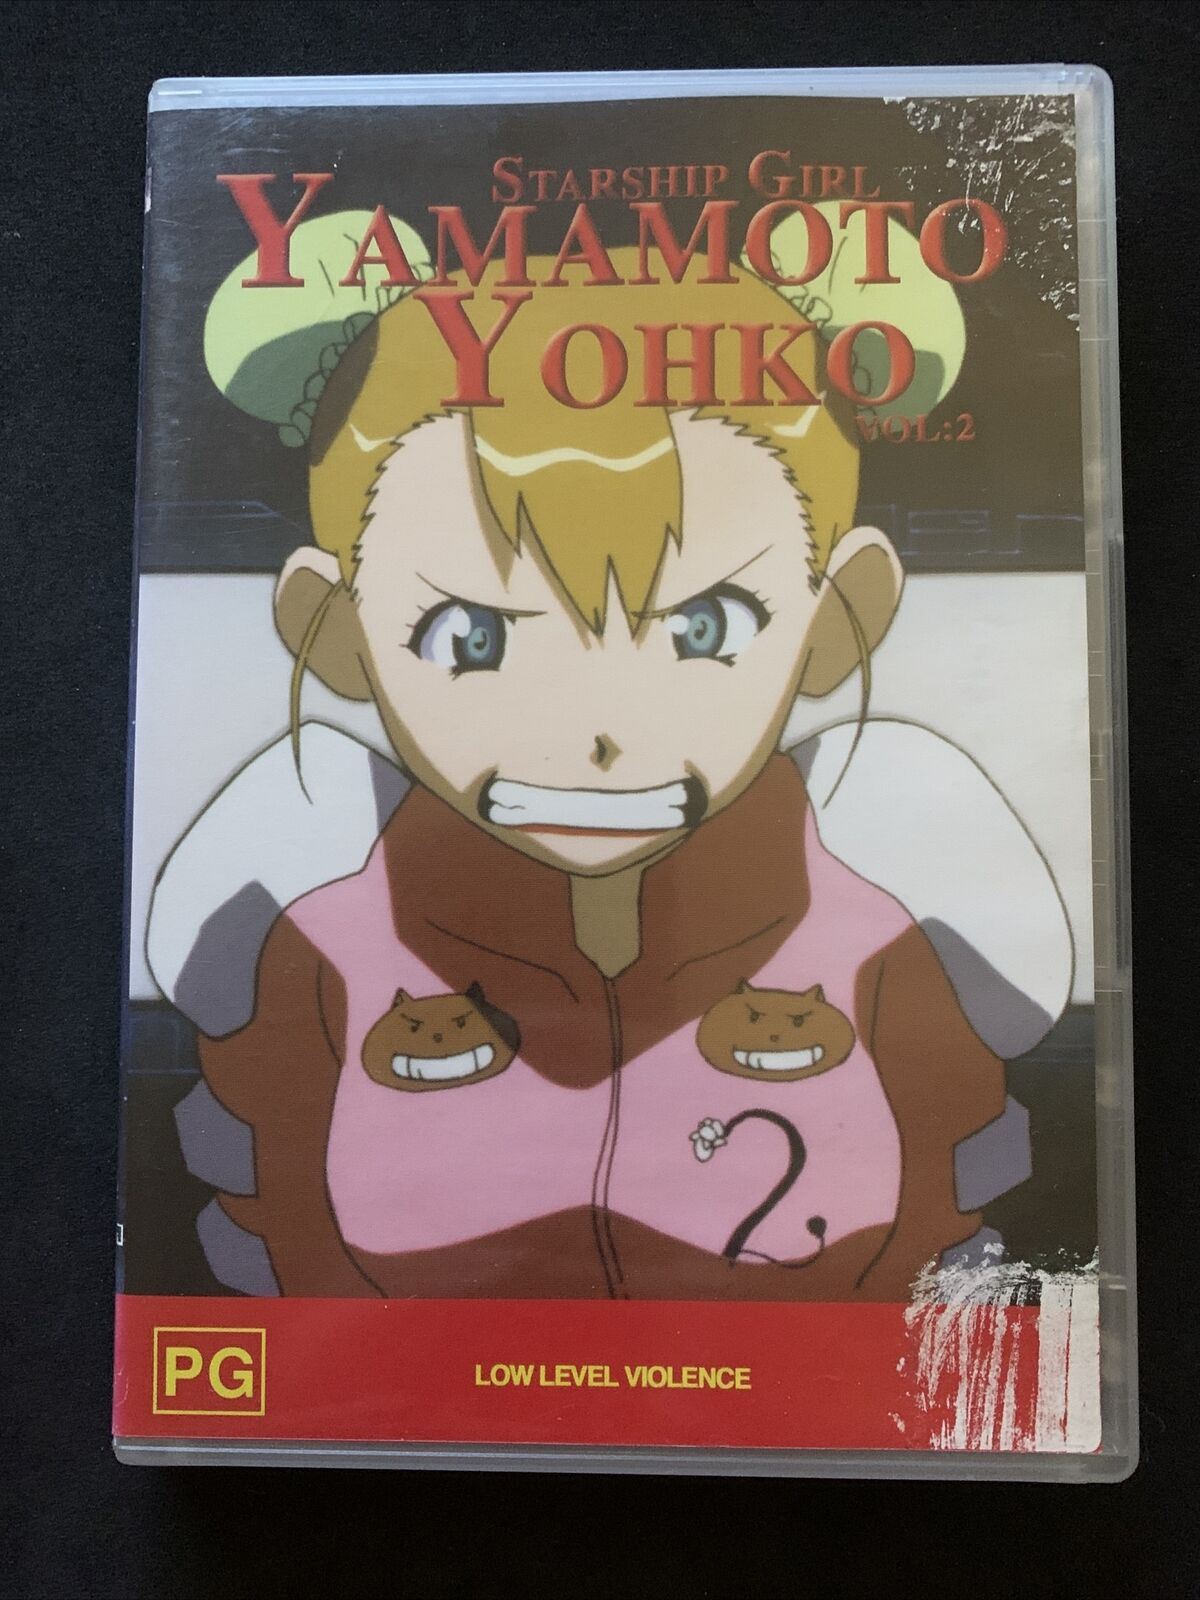 Starship Girl: Yamamoto Yohko : Vol 1 & 2 (DVD, 2003) Region 4